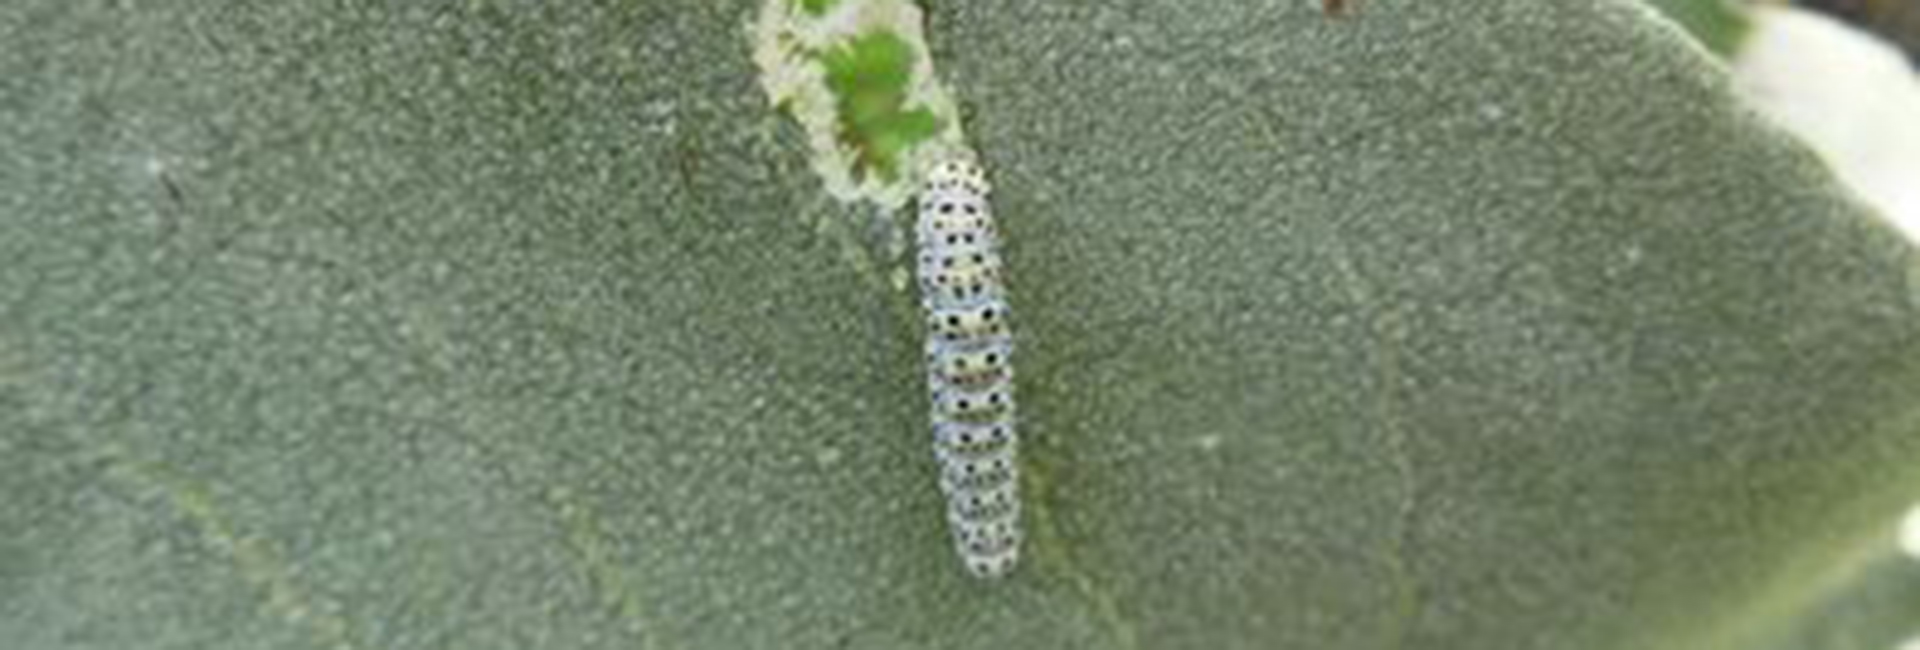 Cucullia verbasci larva, Crete - photo © Fotis Samaritakis